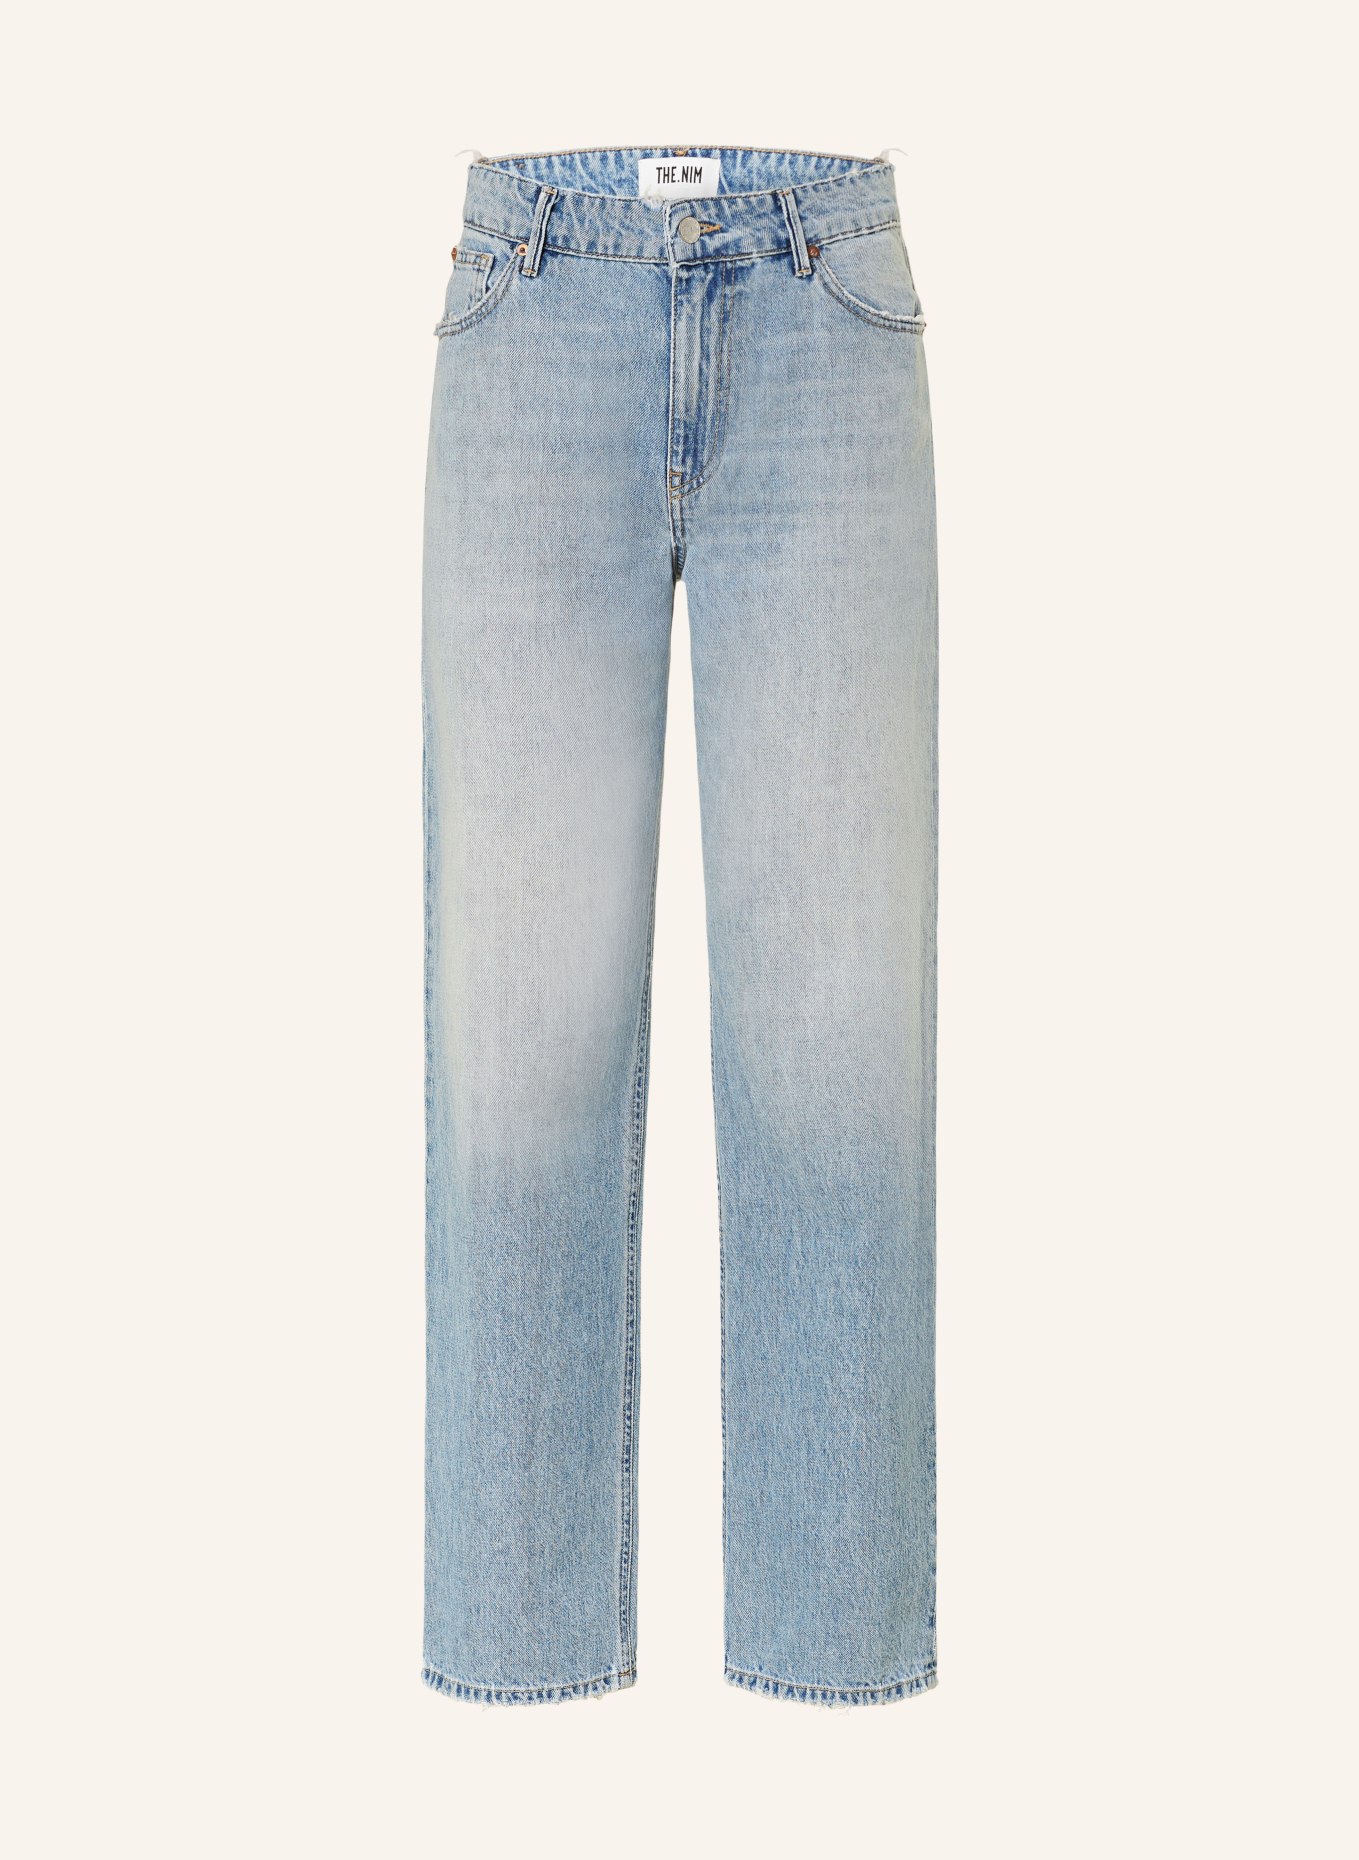 THE.NIM STANDARD Straight Jeans EMMA, Farbe: W725-LSW LIGHT BLUE (Bild 1)